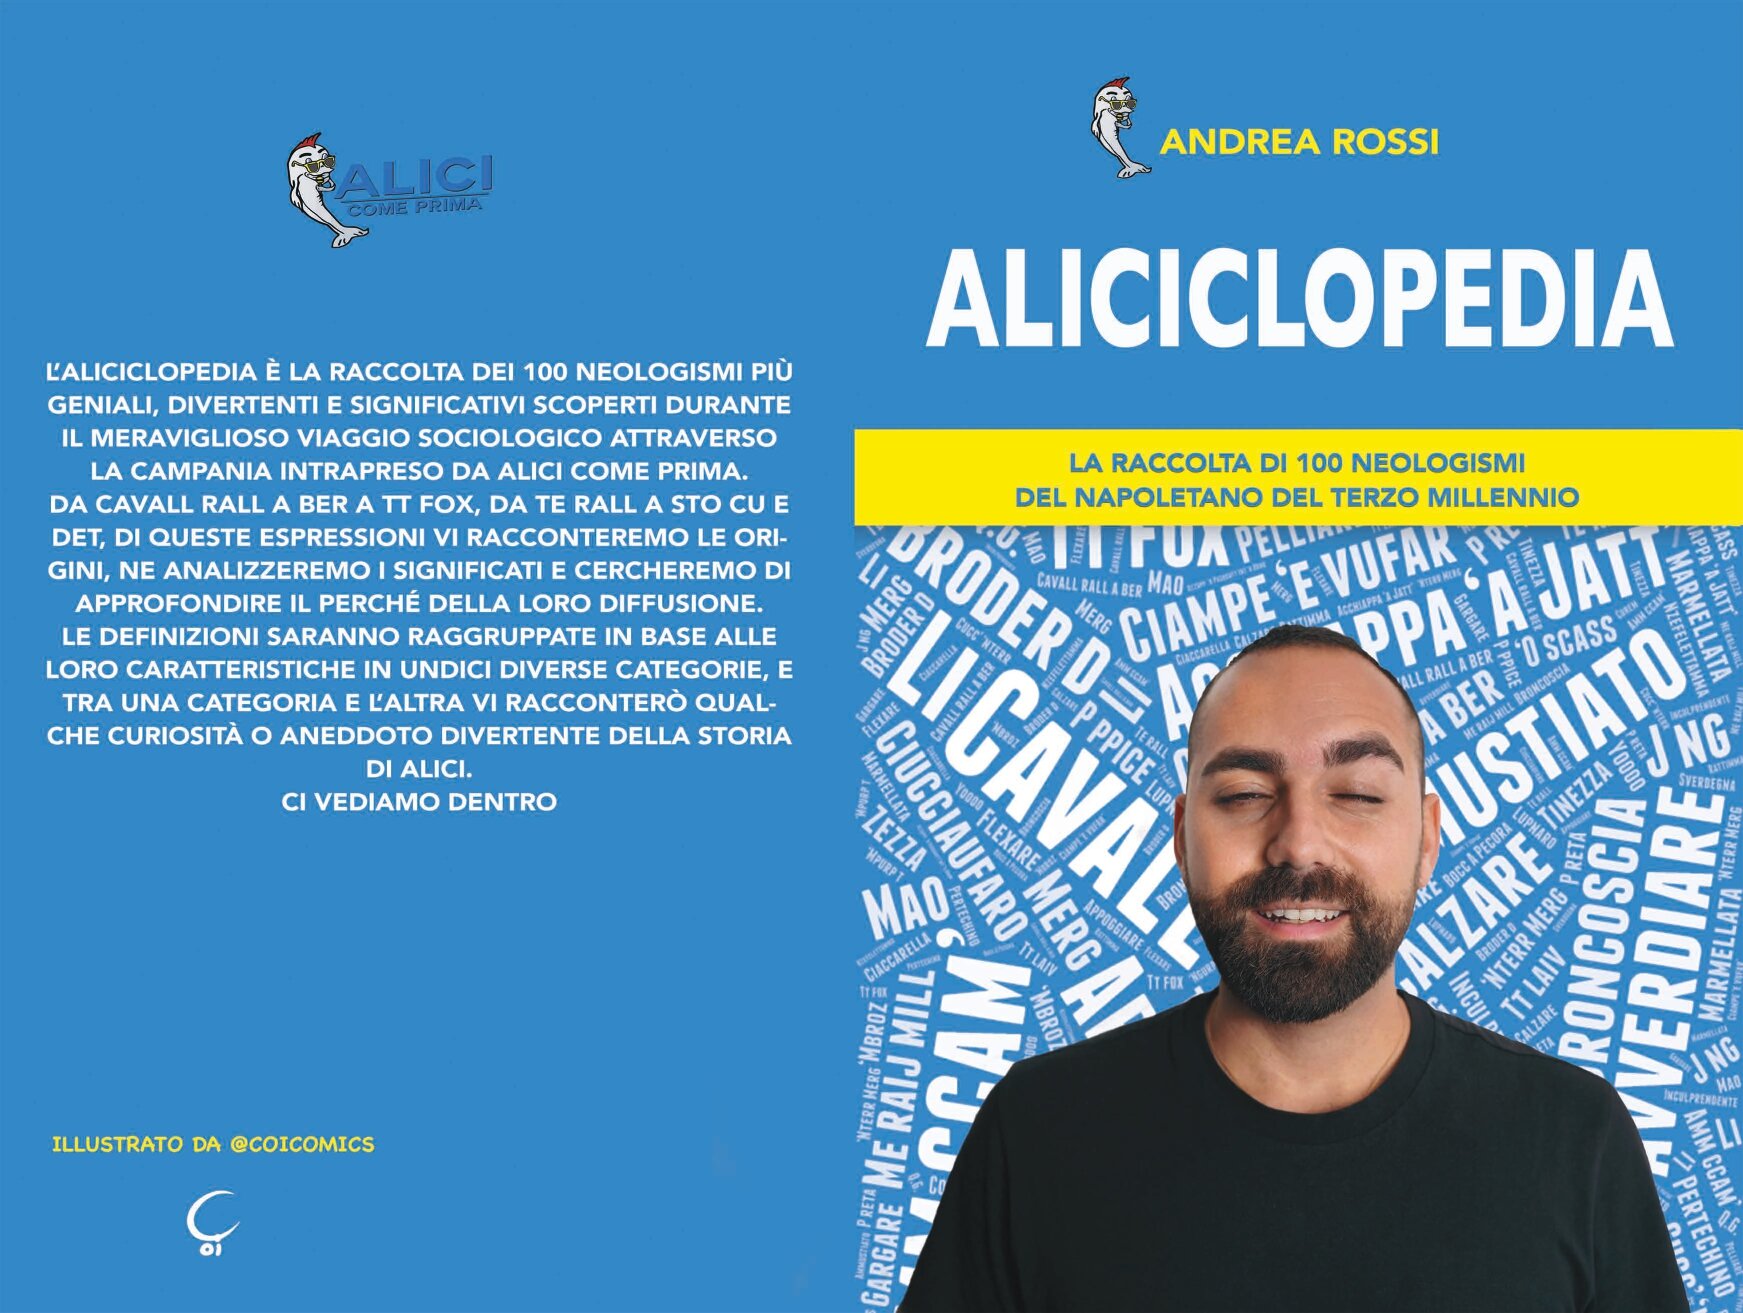 aliciclopedia